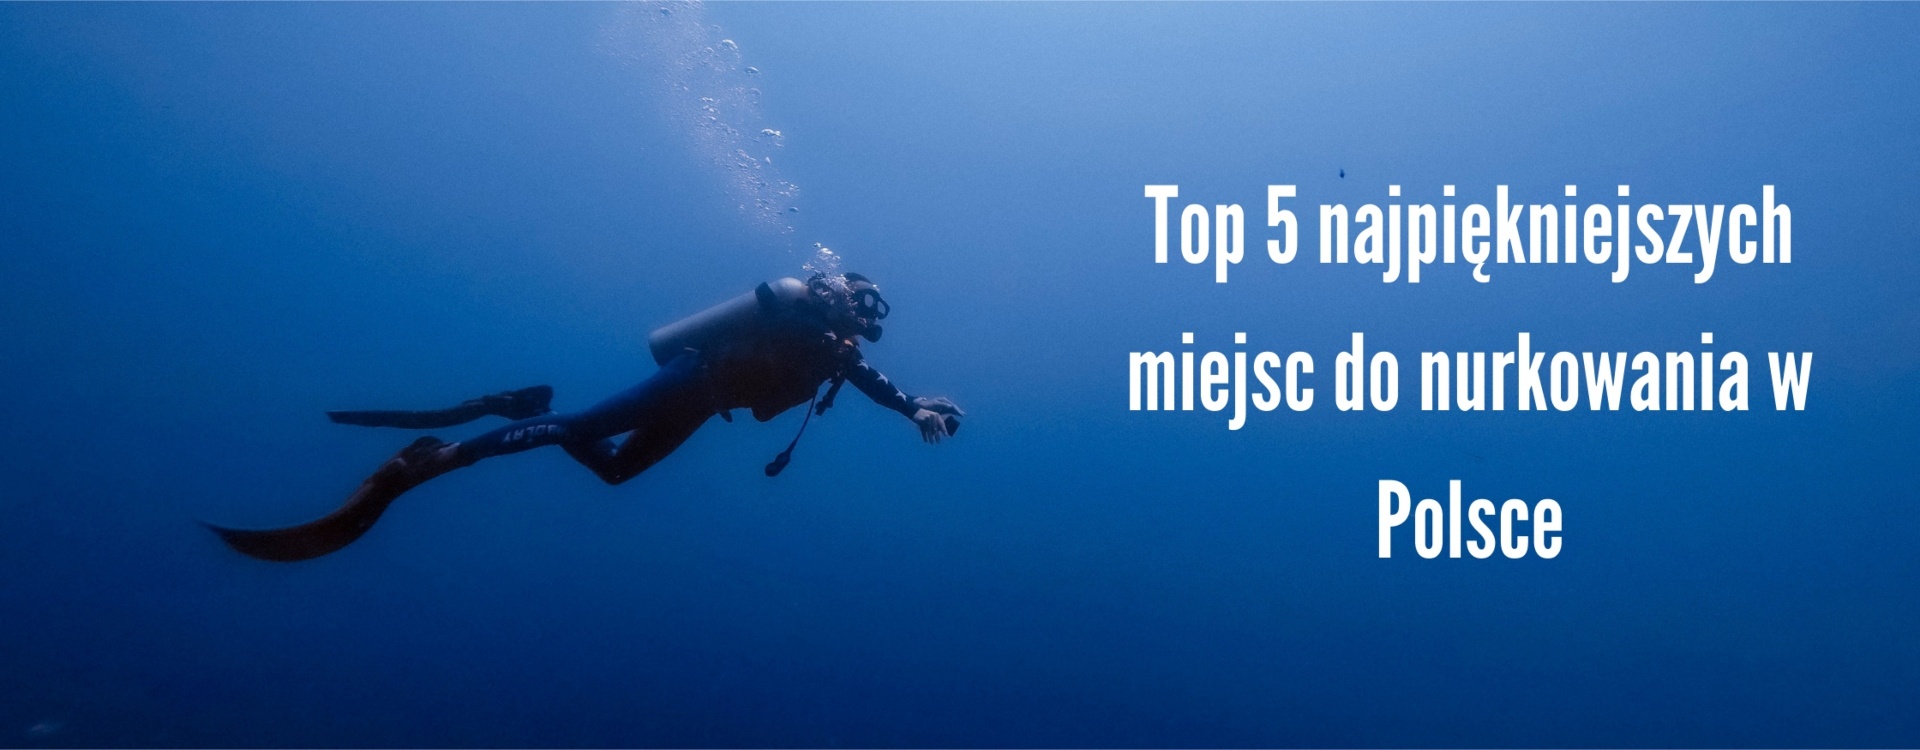 Top 5 najpiękniejszych miejsc do nurkowania w Polsce